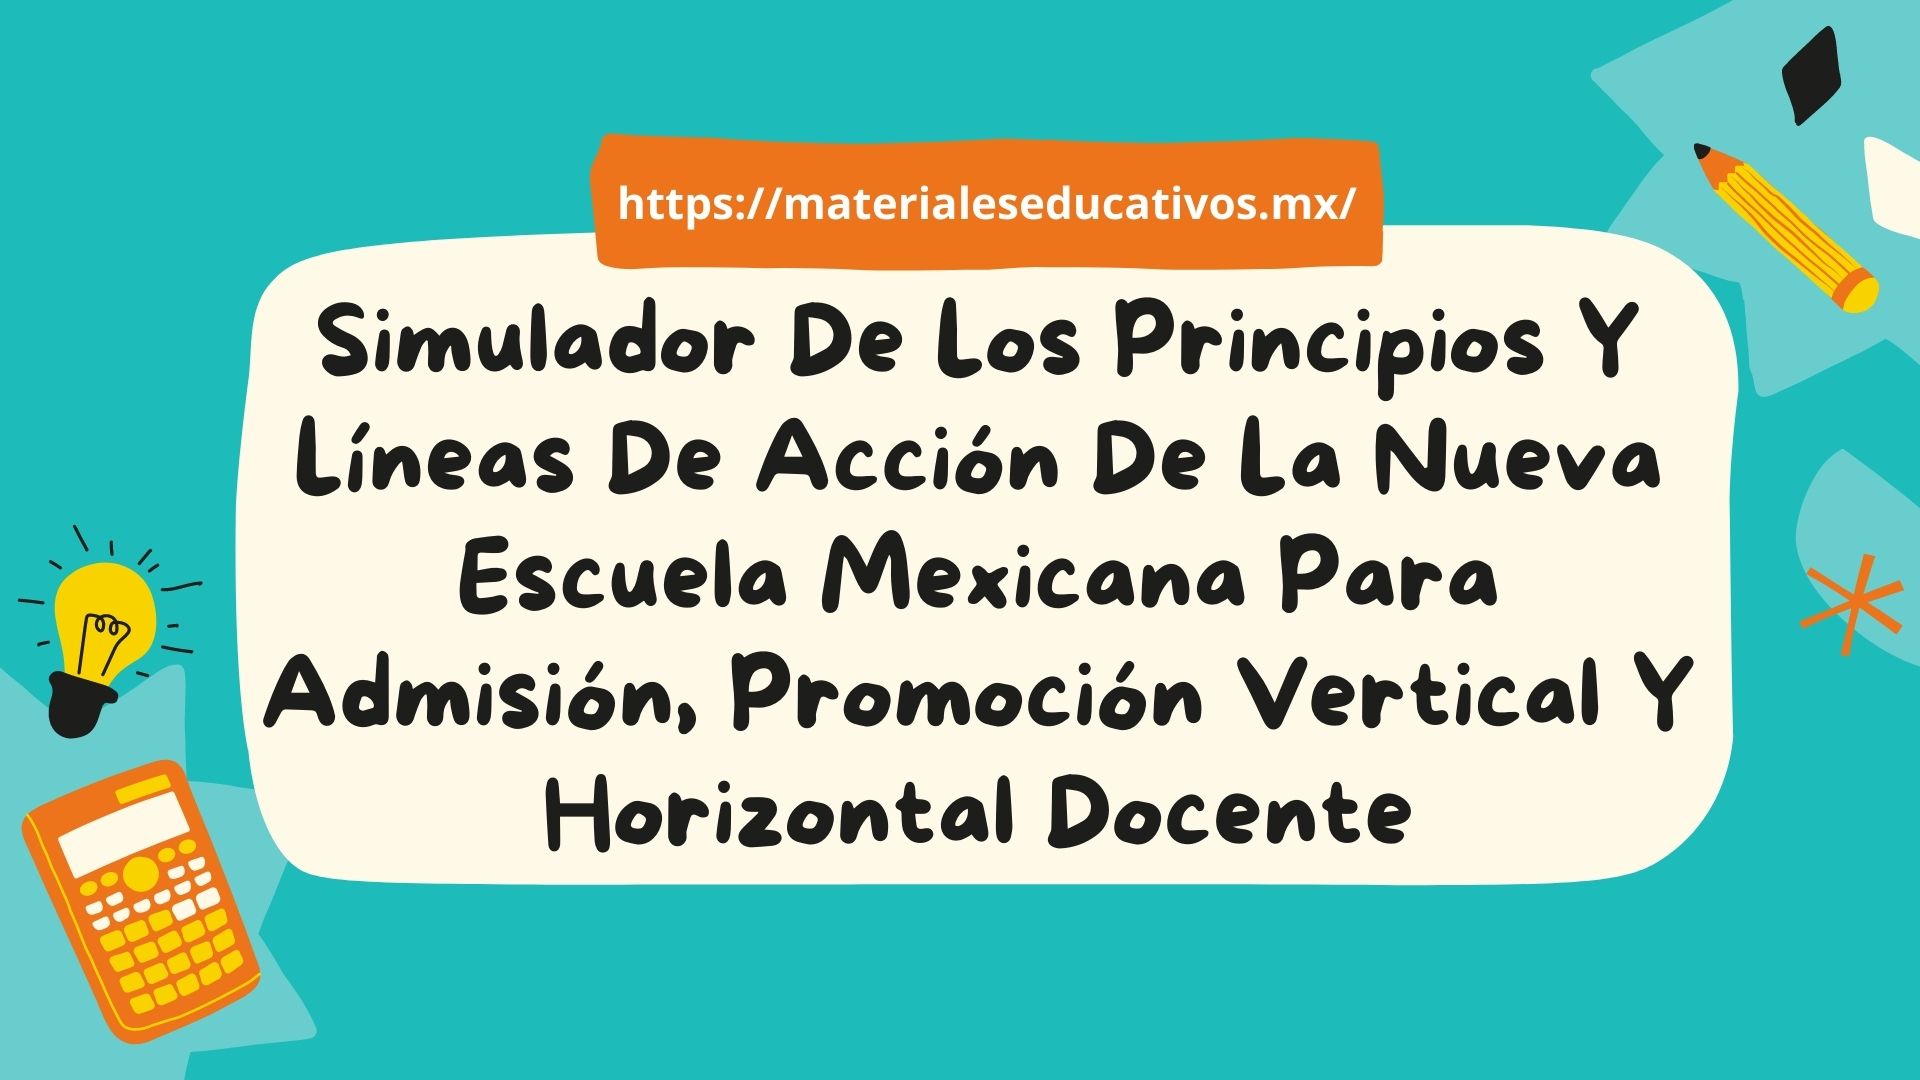 Simulador de los principios y líneas de acción de la nueva escuela mexicana para admisión, promoción vertical y horizontal docente USICAMM